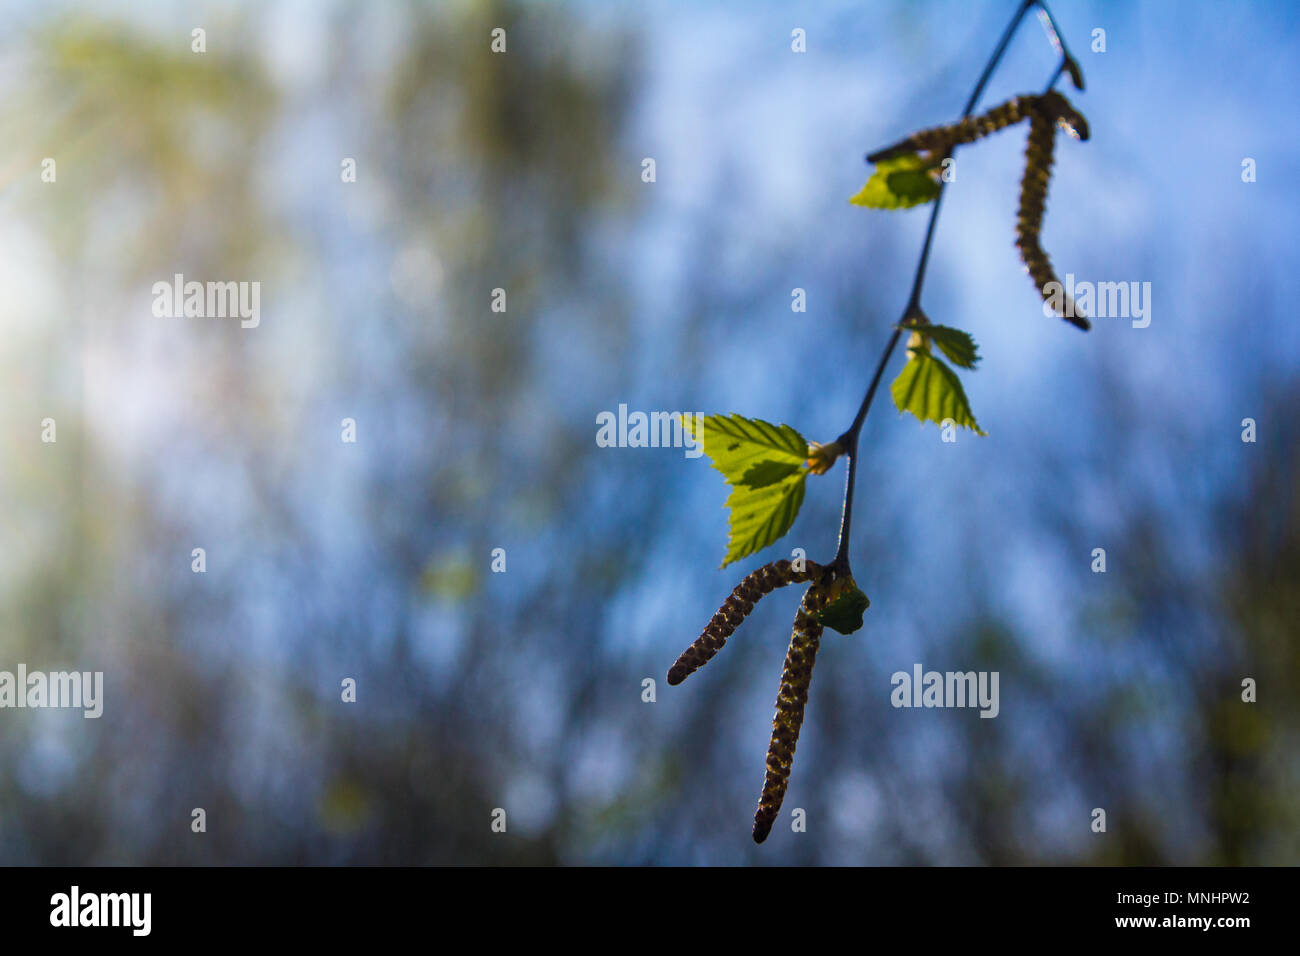 Primo verde Betulla foglie con semi su una molla giornata di sole contro il cielo blu Foto Stock